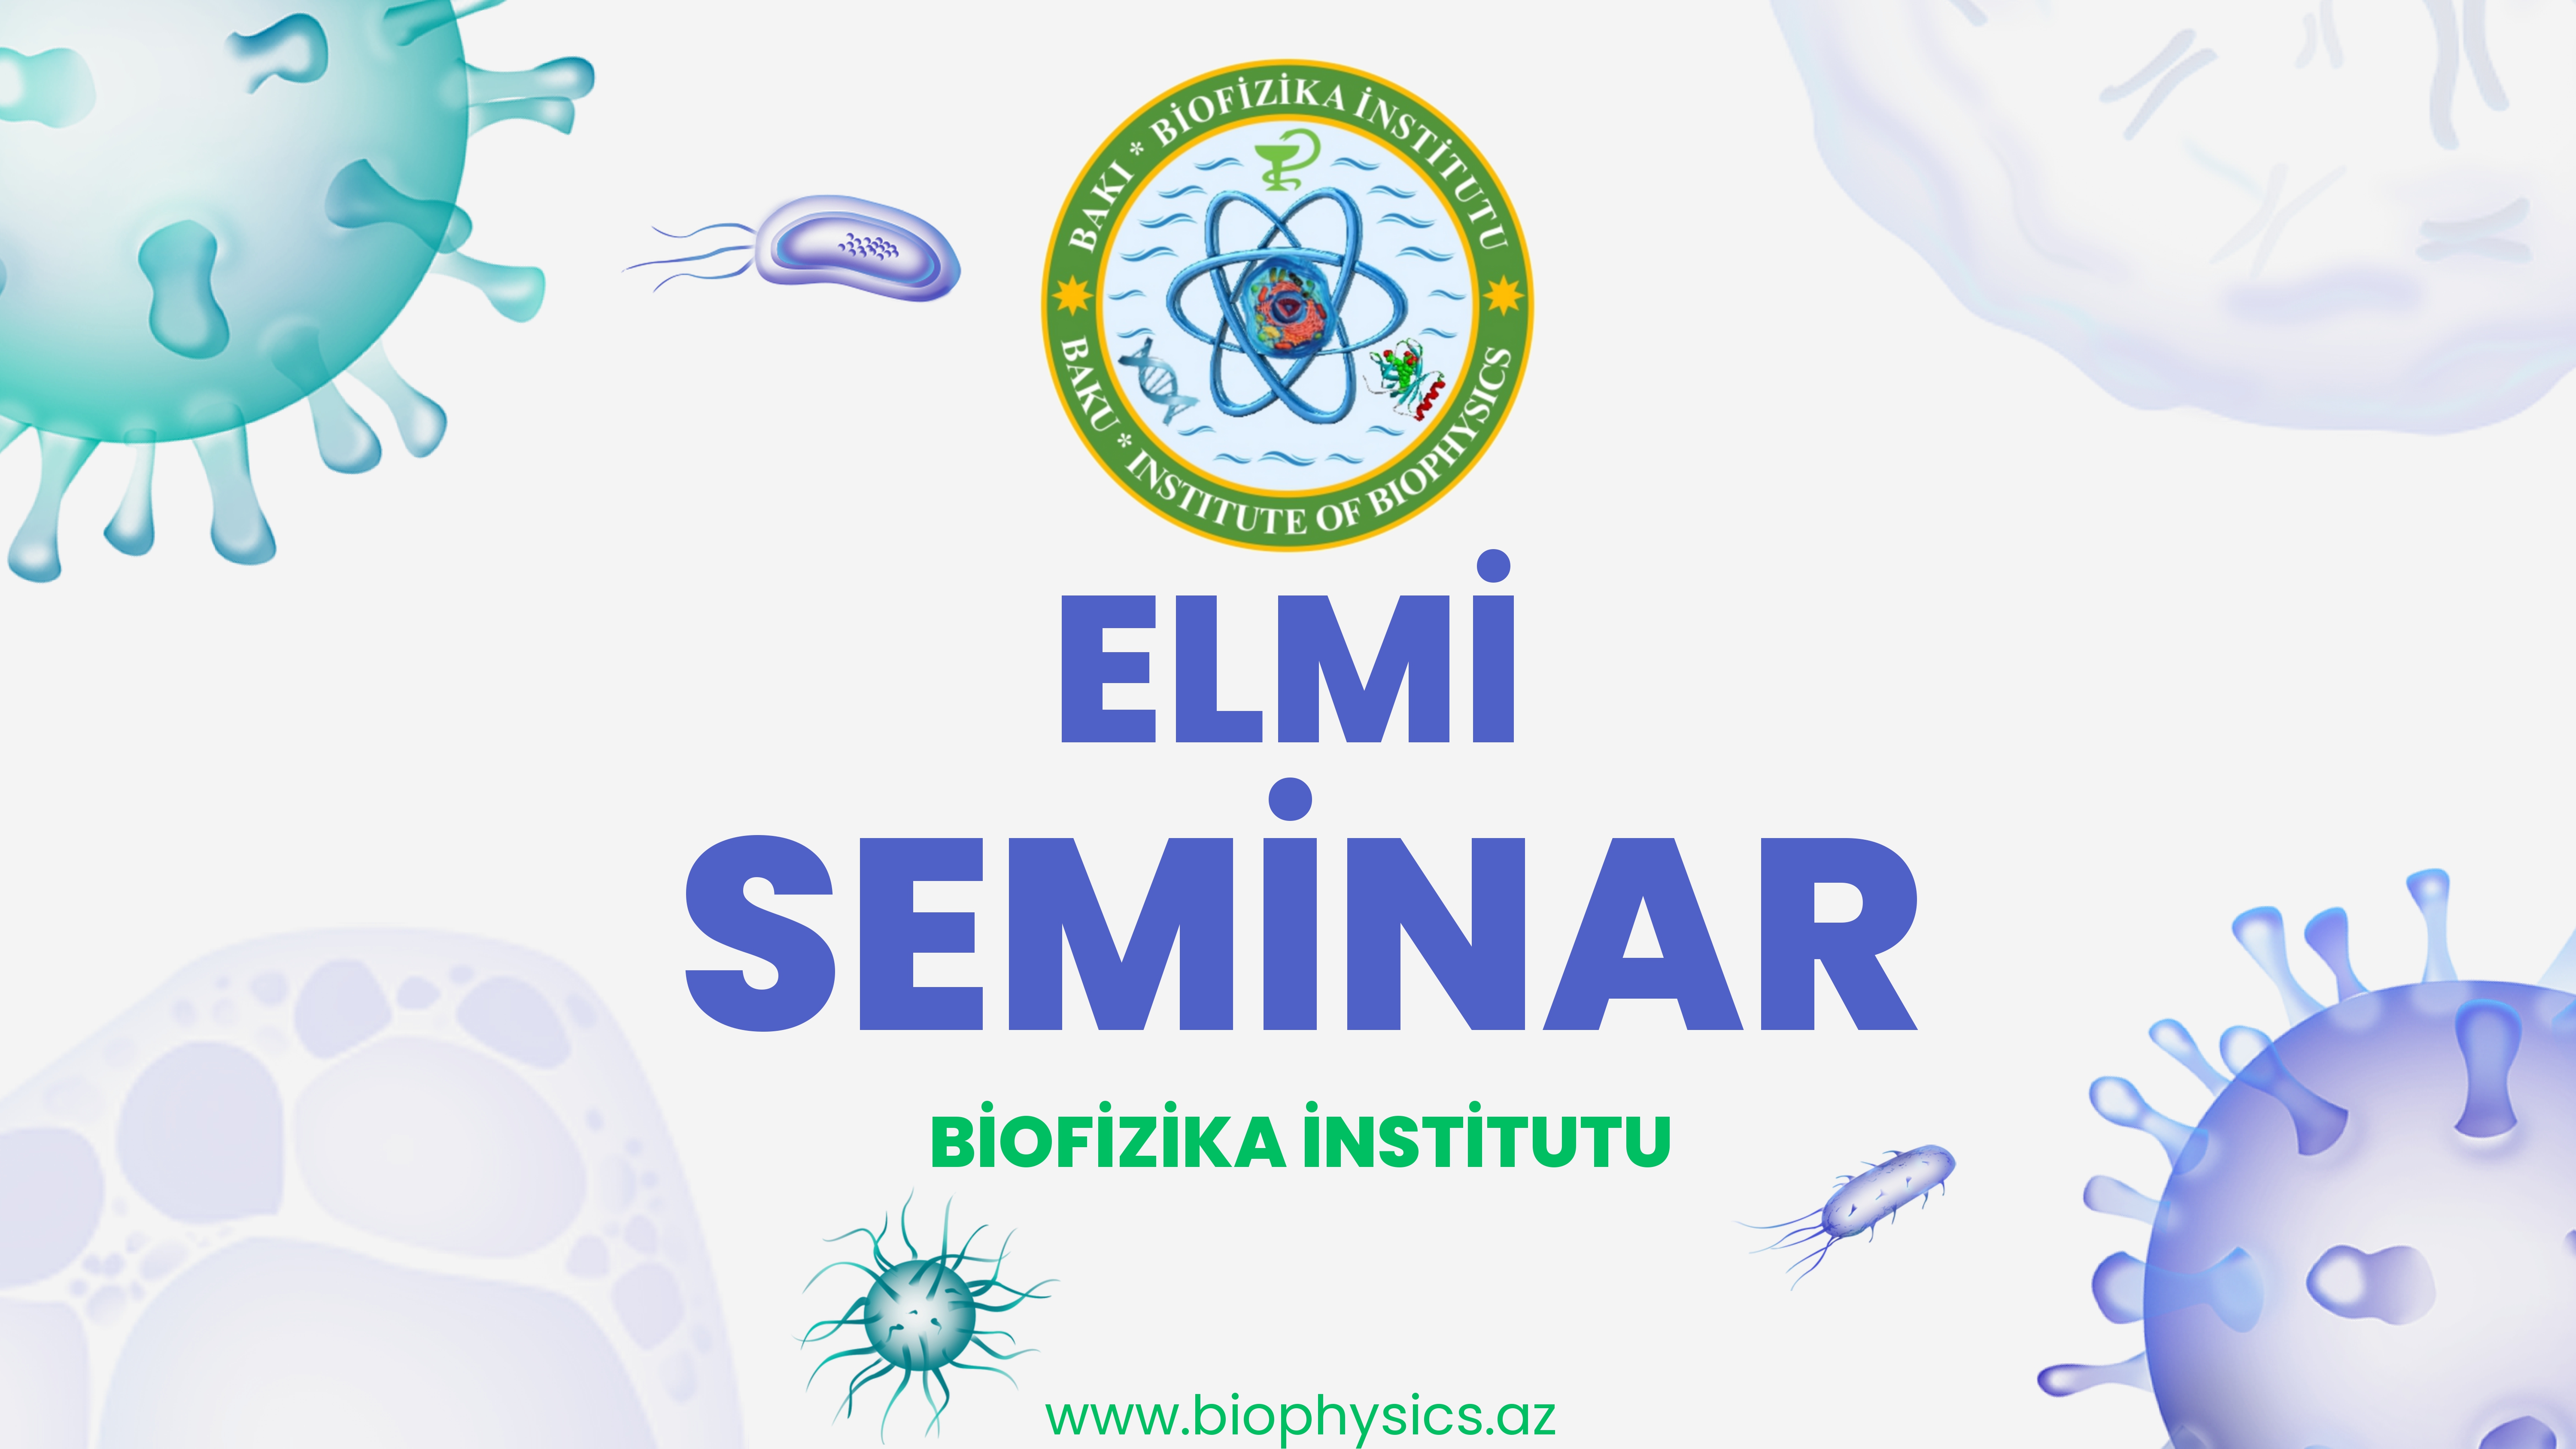 Biofizika İnstitutunda “Bioelektrik siqnallar: funksiyaları və patofiziologiyası” mövzusunda elmi seminar keçiriləcək